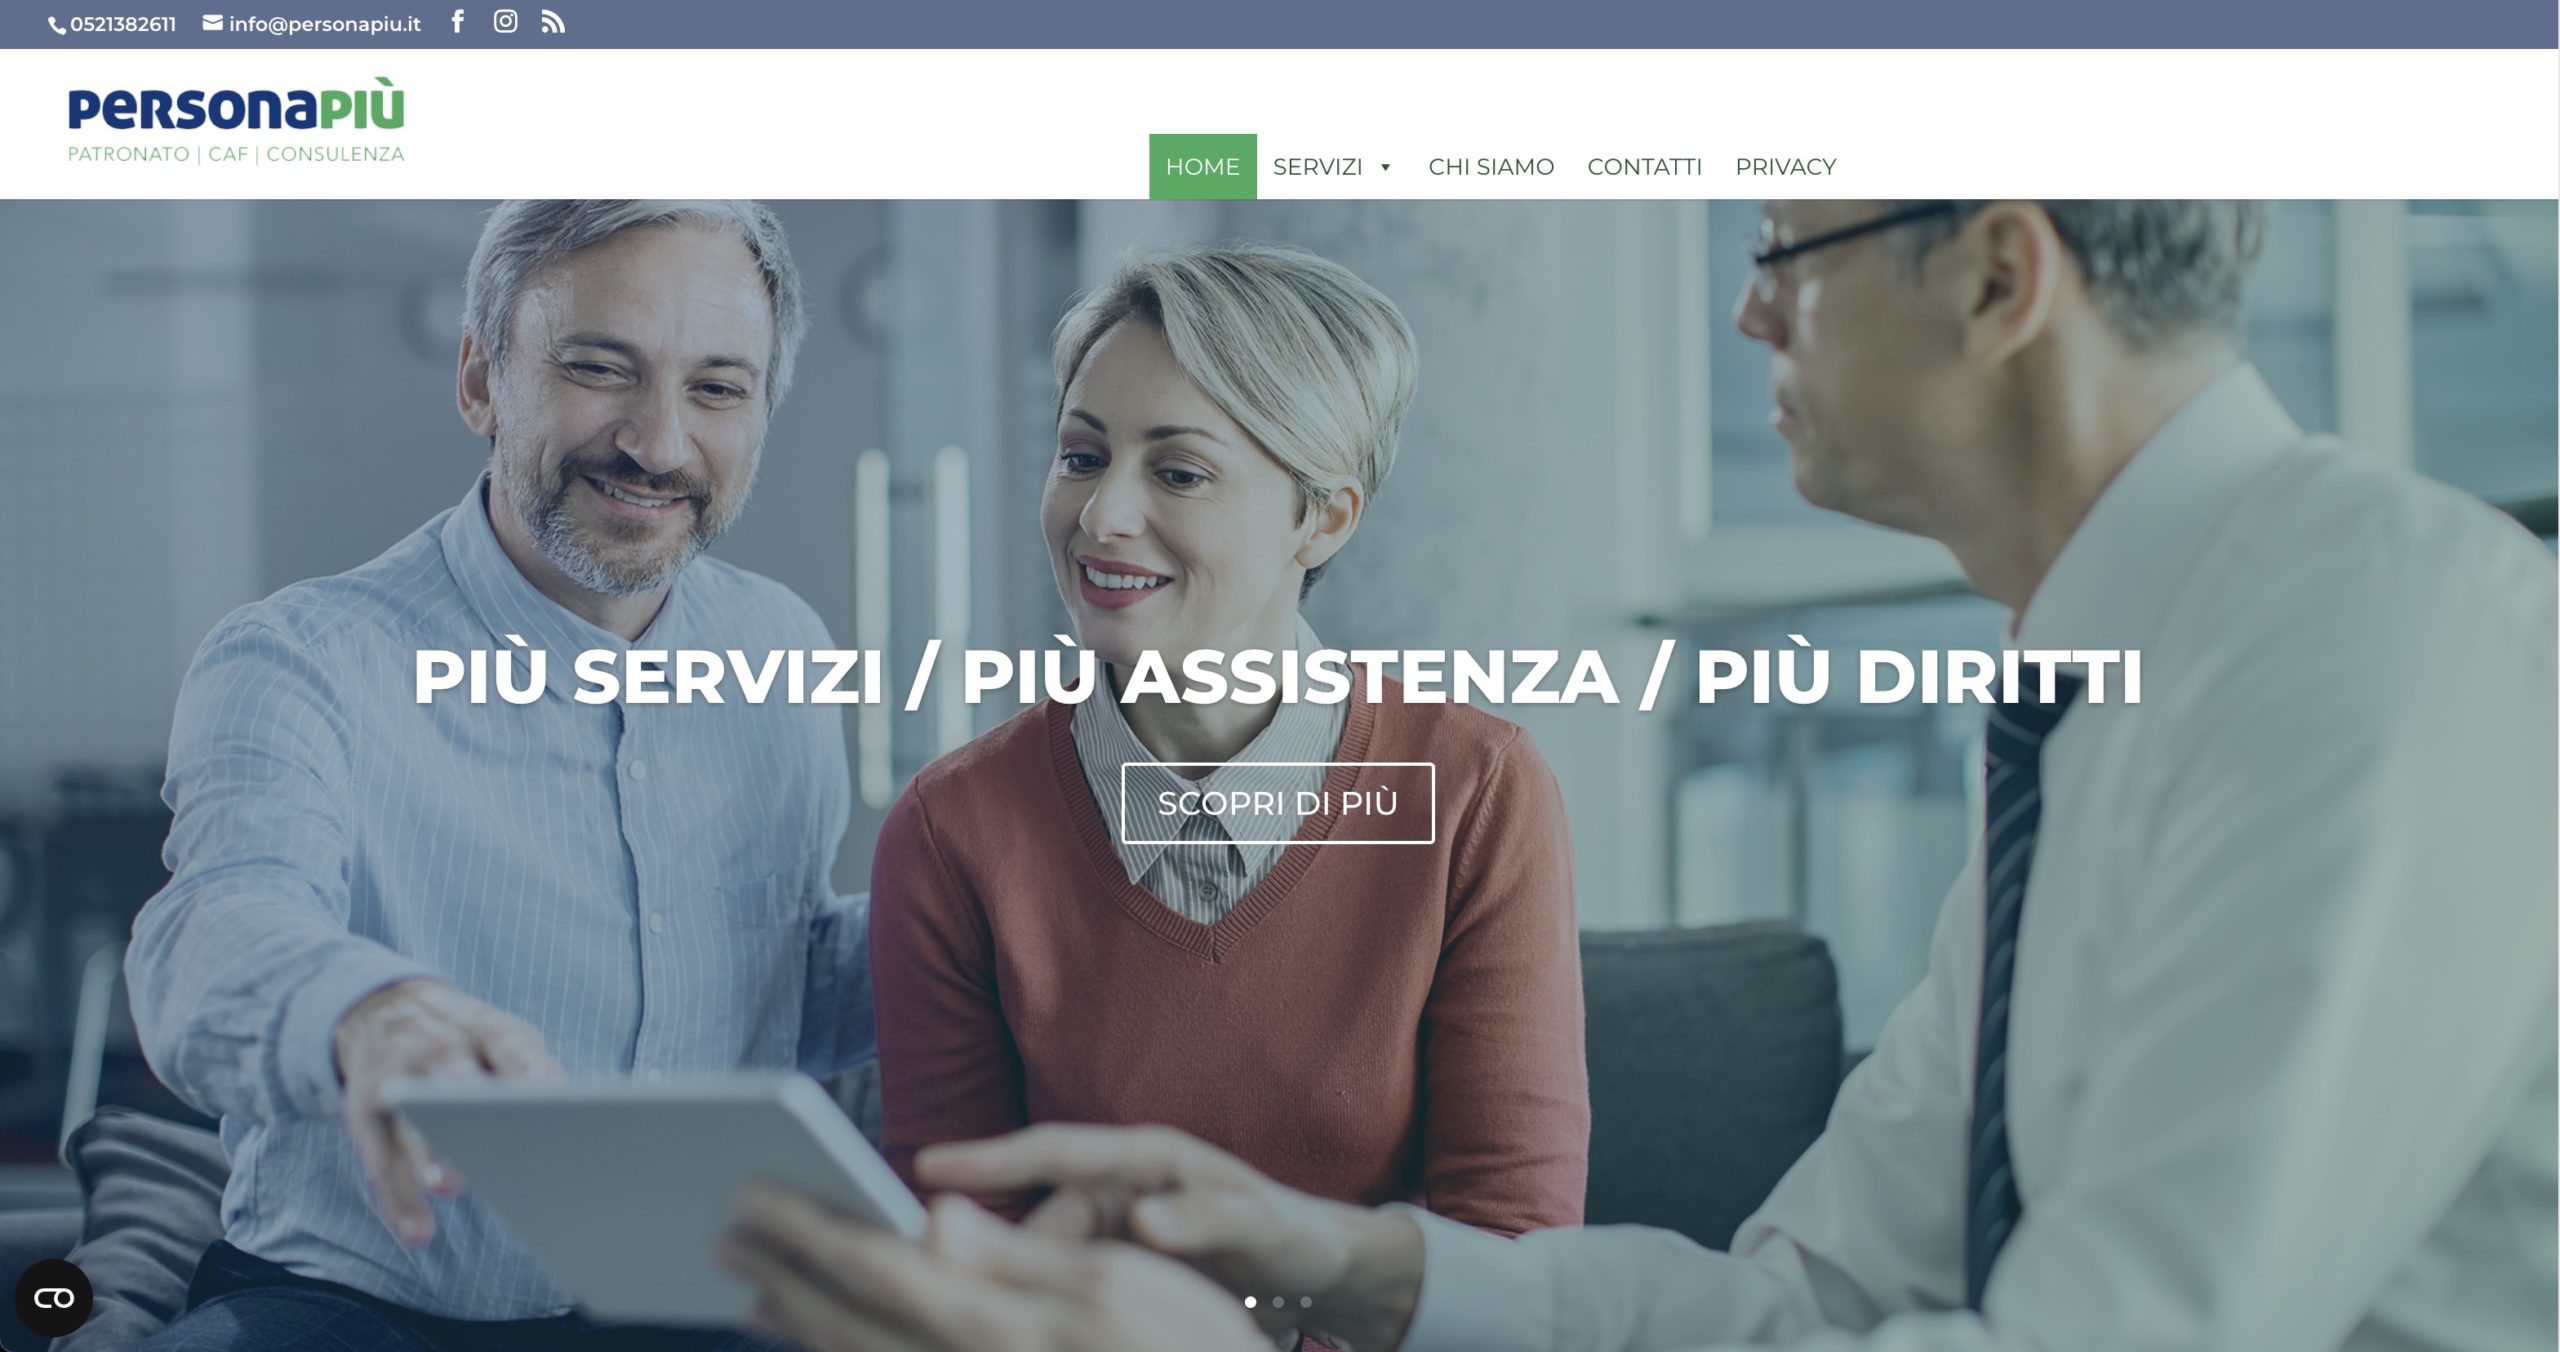 PERSONAPIÙ: Confesercenti Parma riunisce il suo servizio al cittadino in un unico progetto e lancia un nuovo portale dedicato